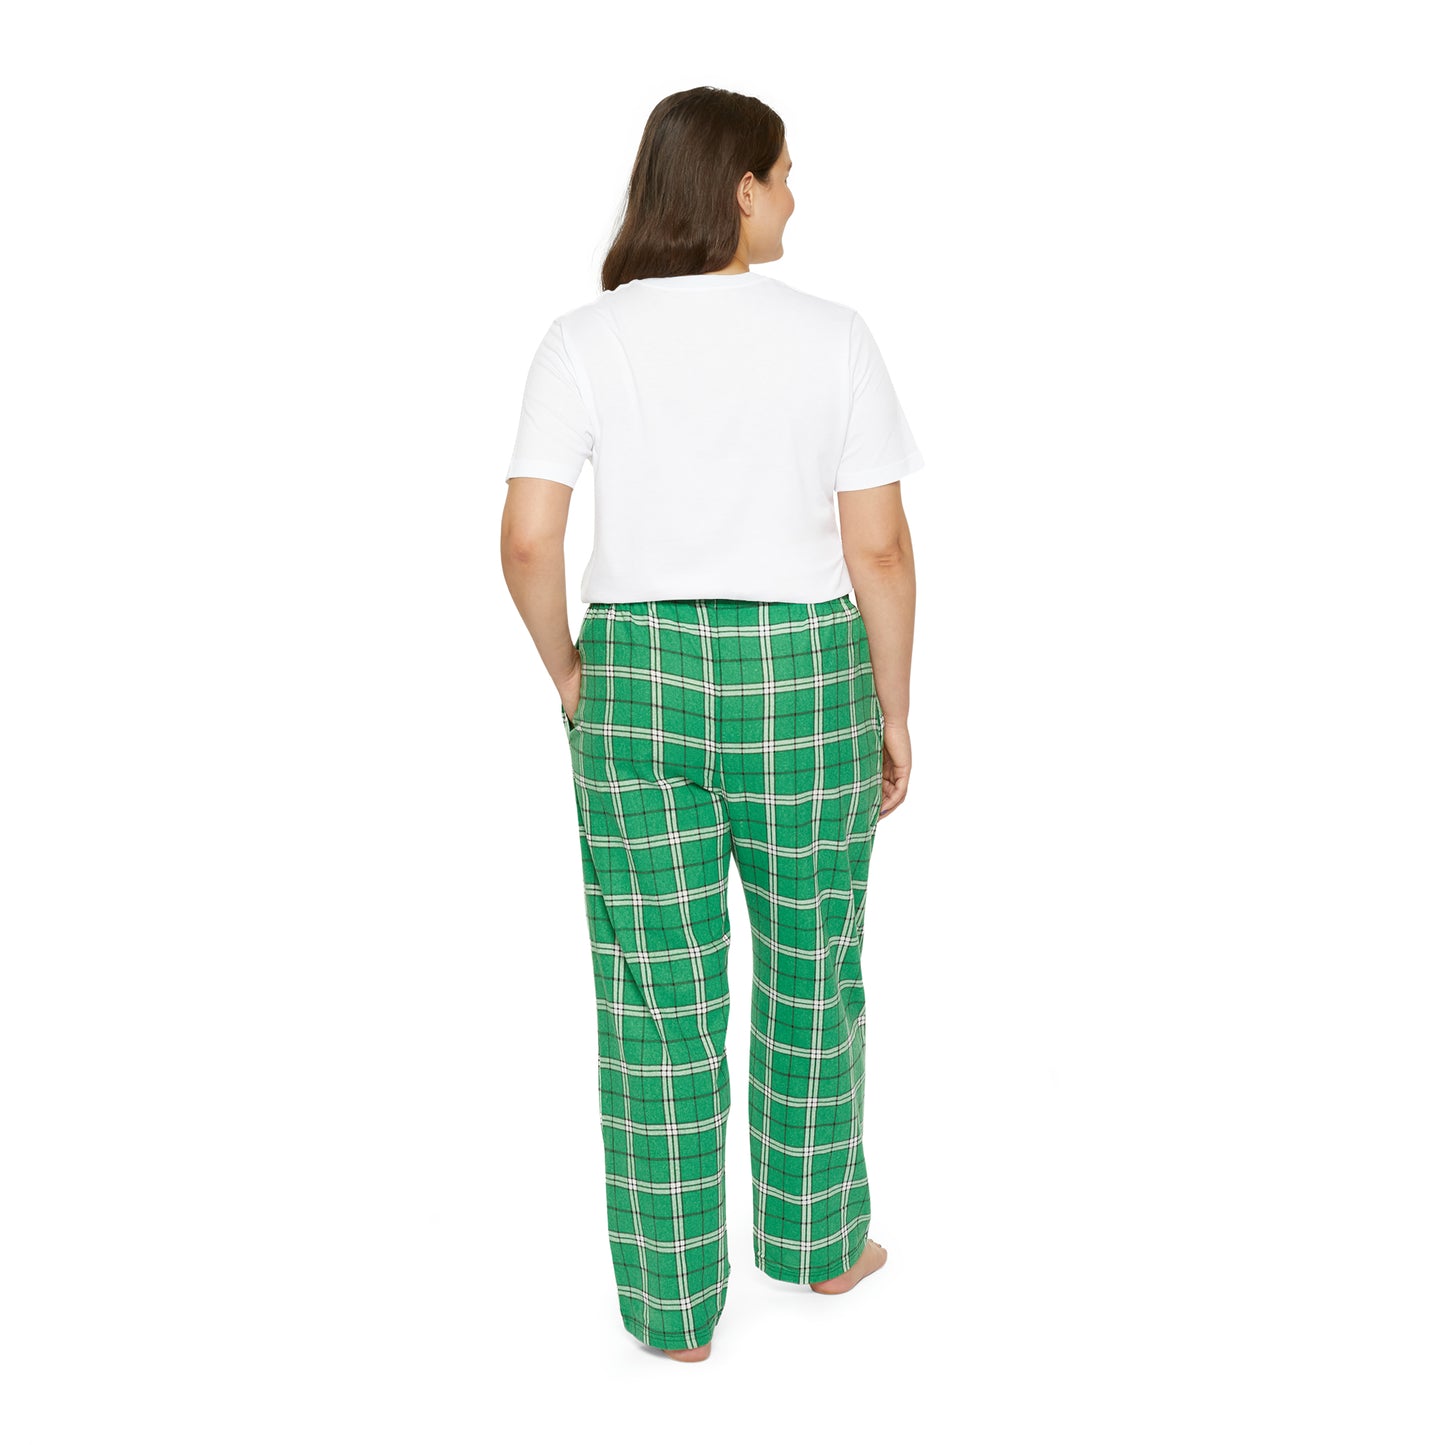 I'm Feeling Picklish women's short sleeve pajama set